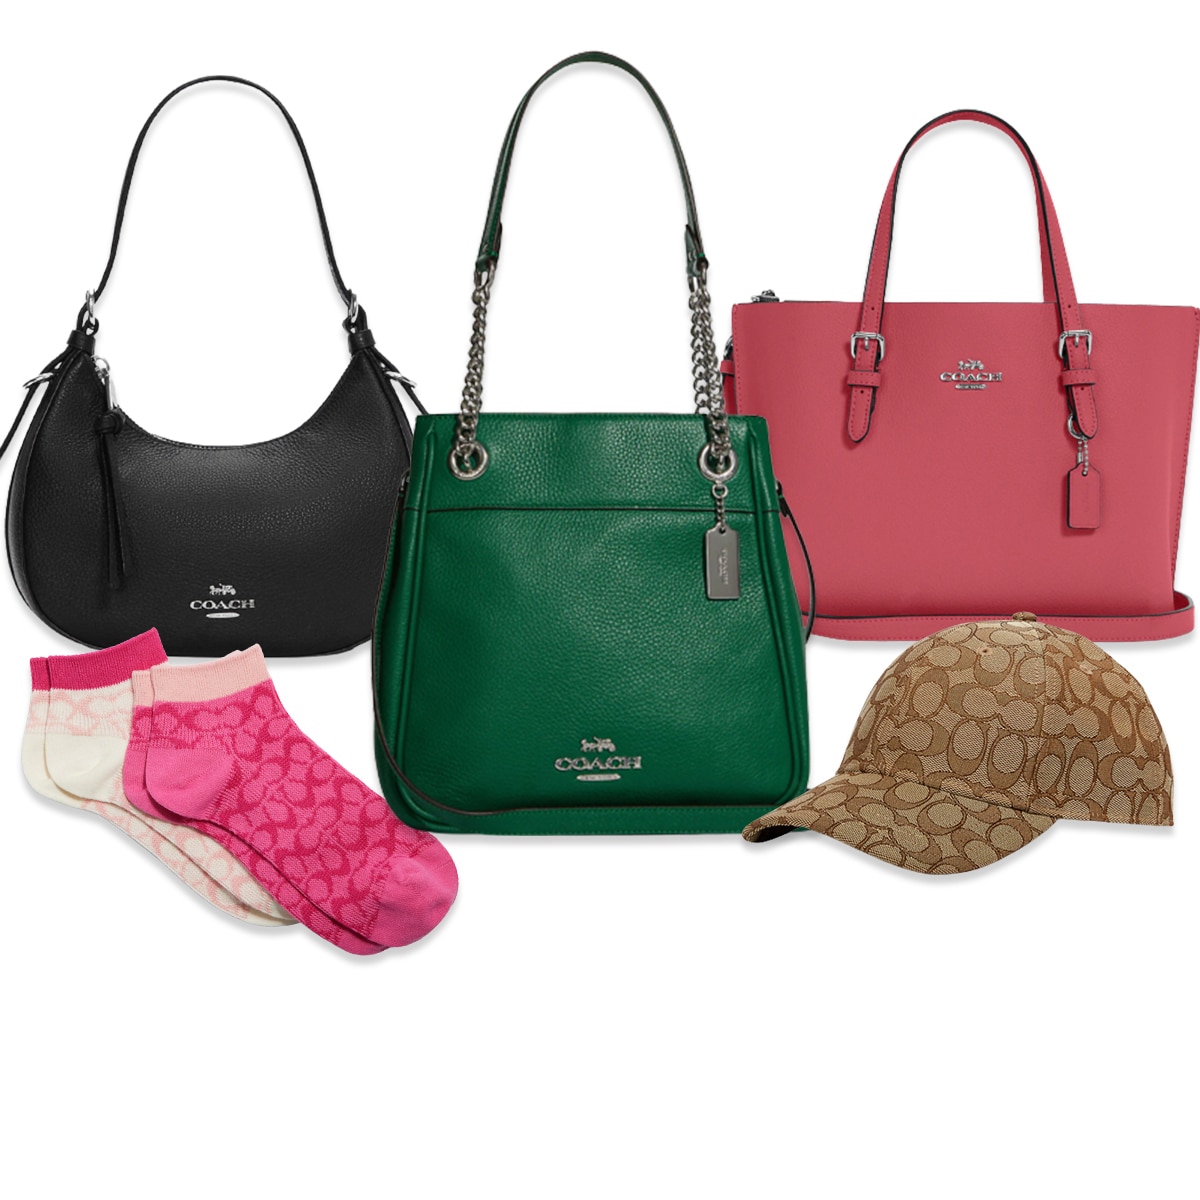 Coach Outlet 70 Off Sale A 450 Handbag for 135  More Trendy Deals  E  Online